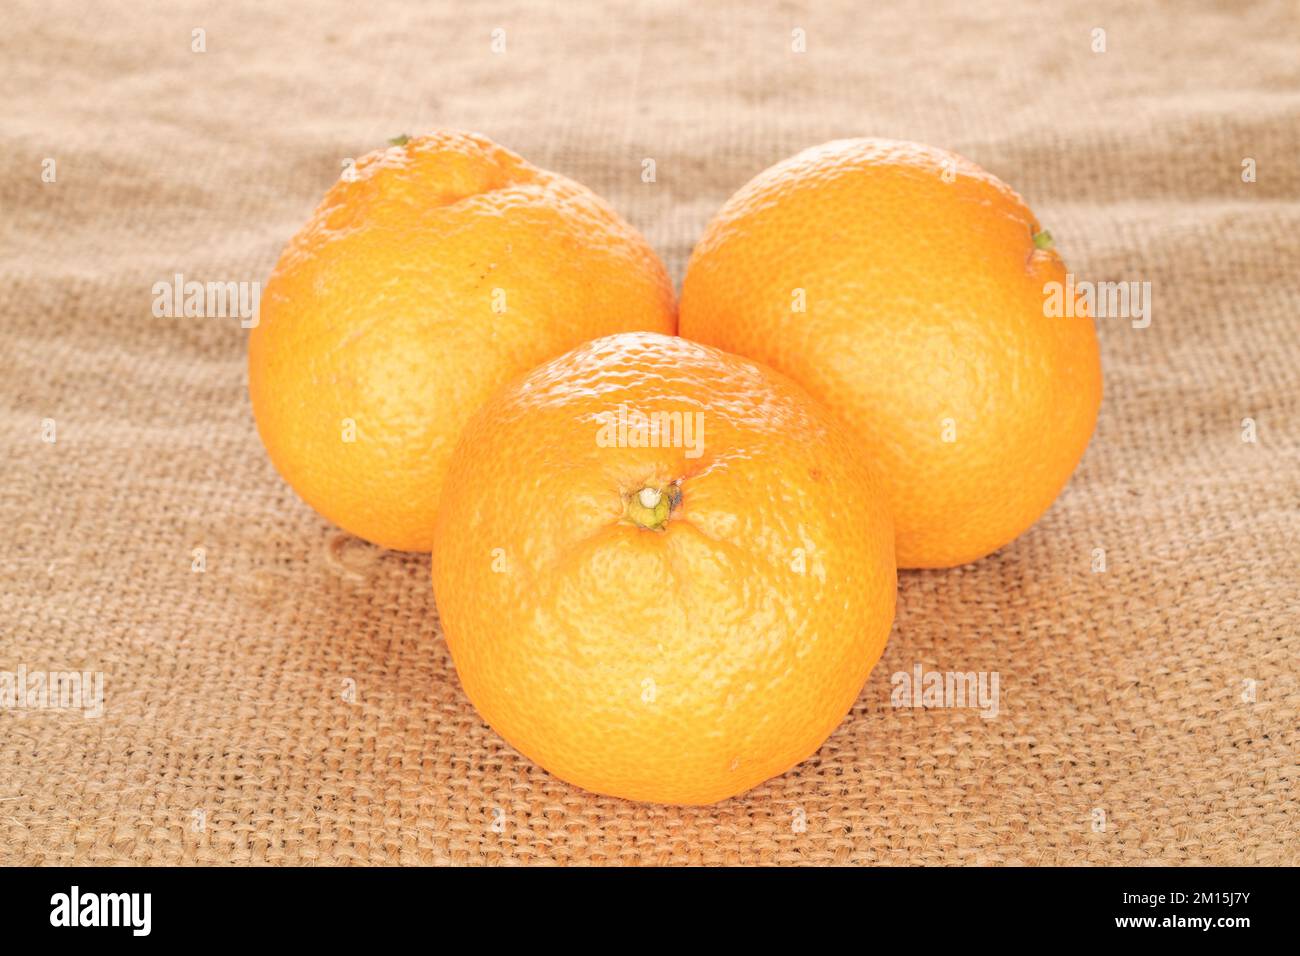 Trois mandarines mûres sur une toile de jute, macro. Banque D'Images